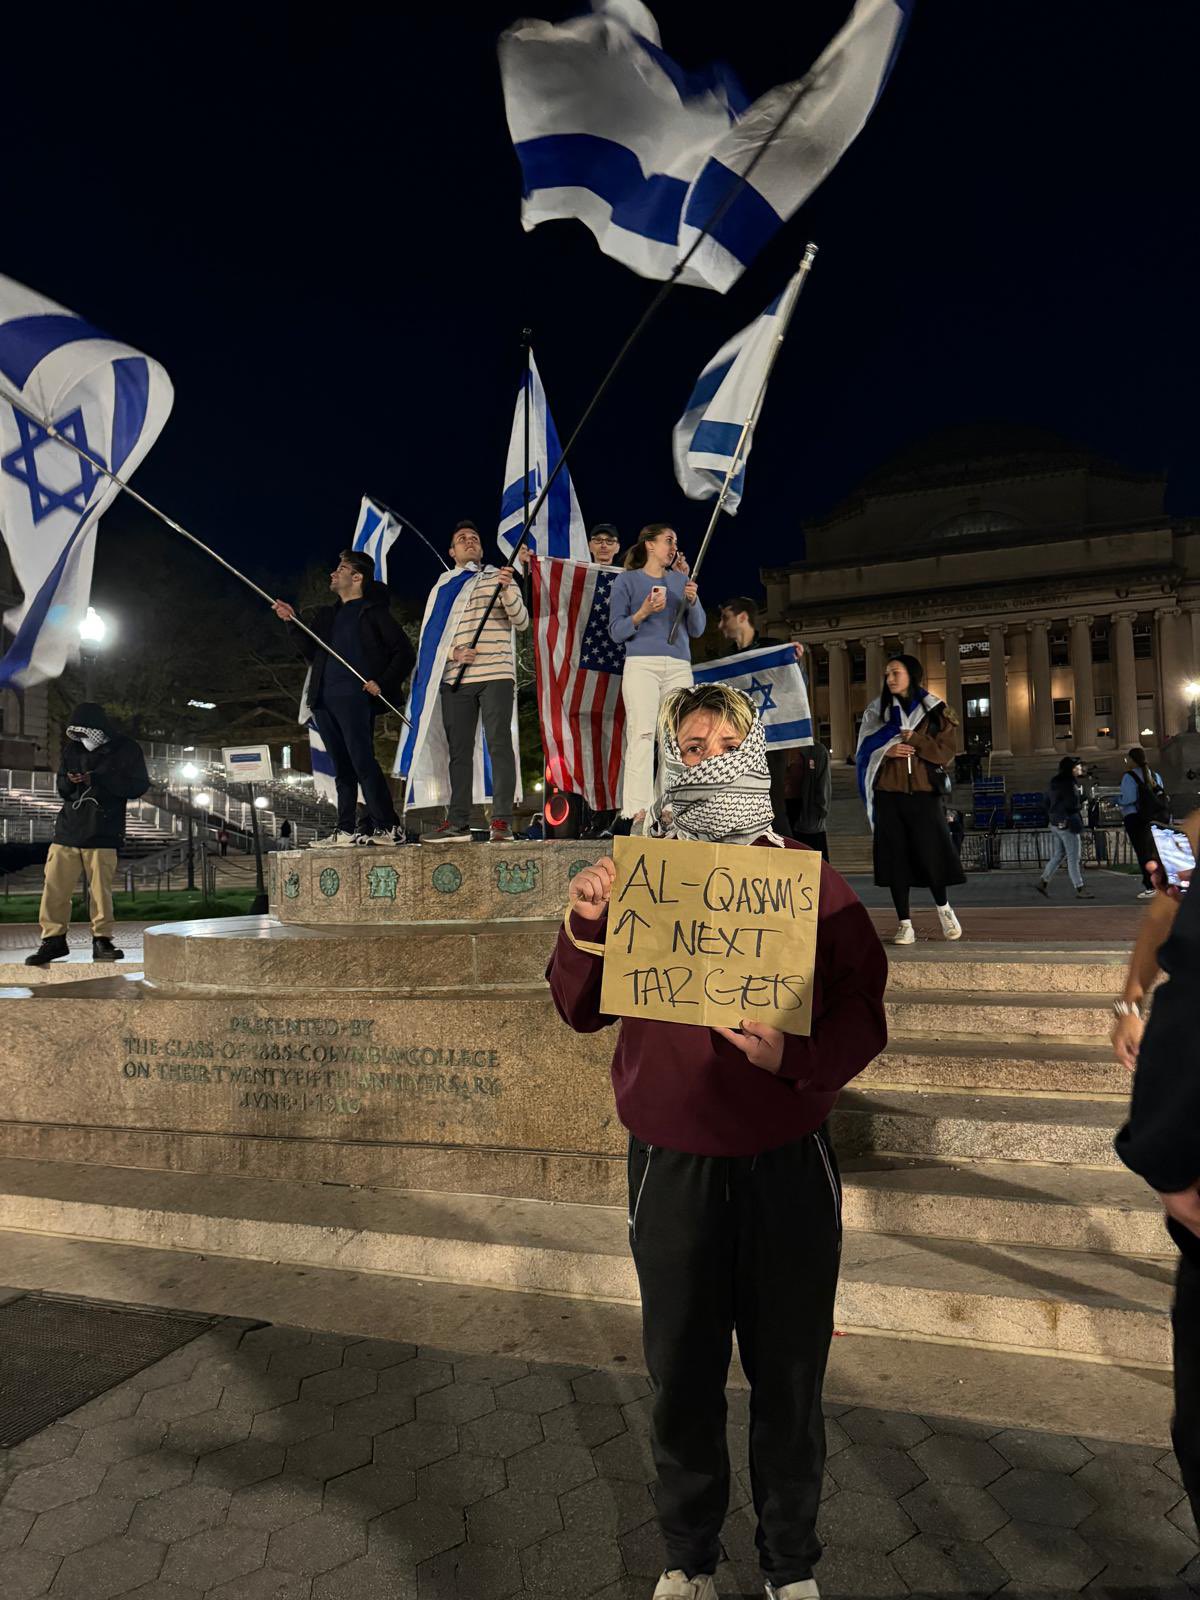 Columbia University Campus Faces Rising Anti-Semitic Protests